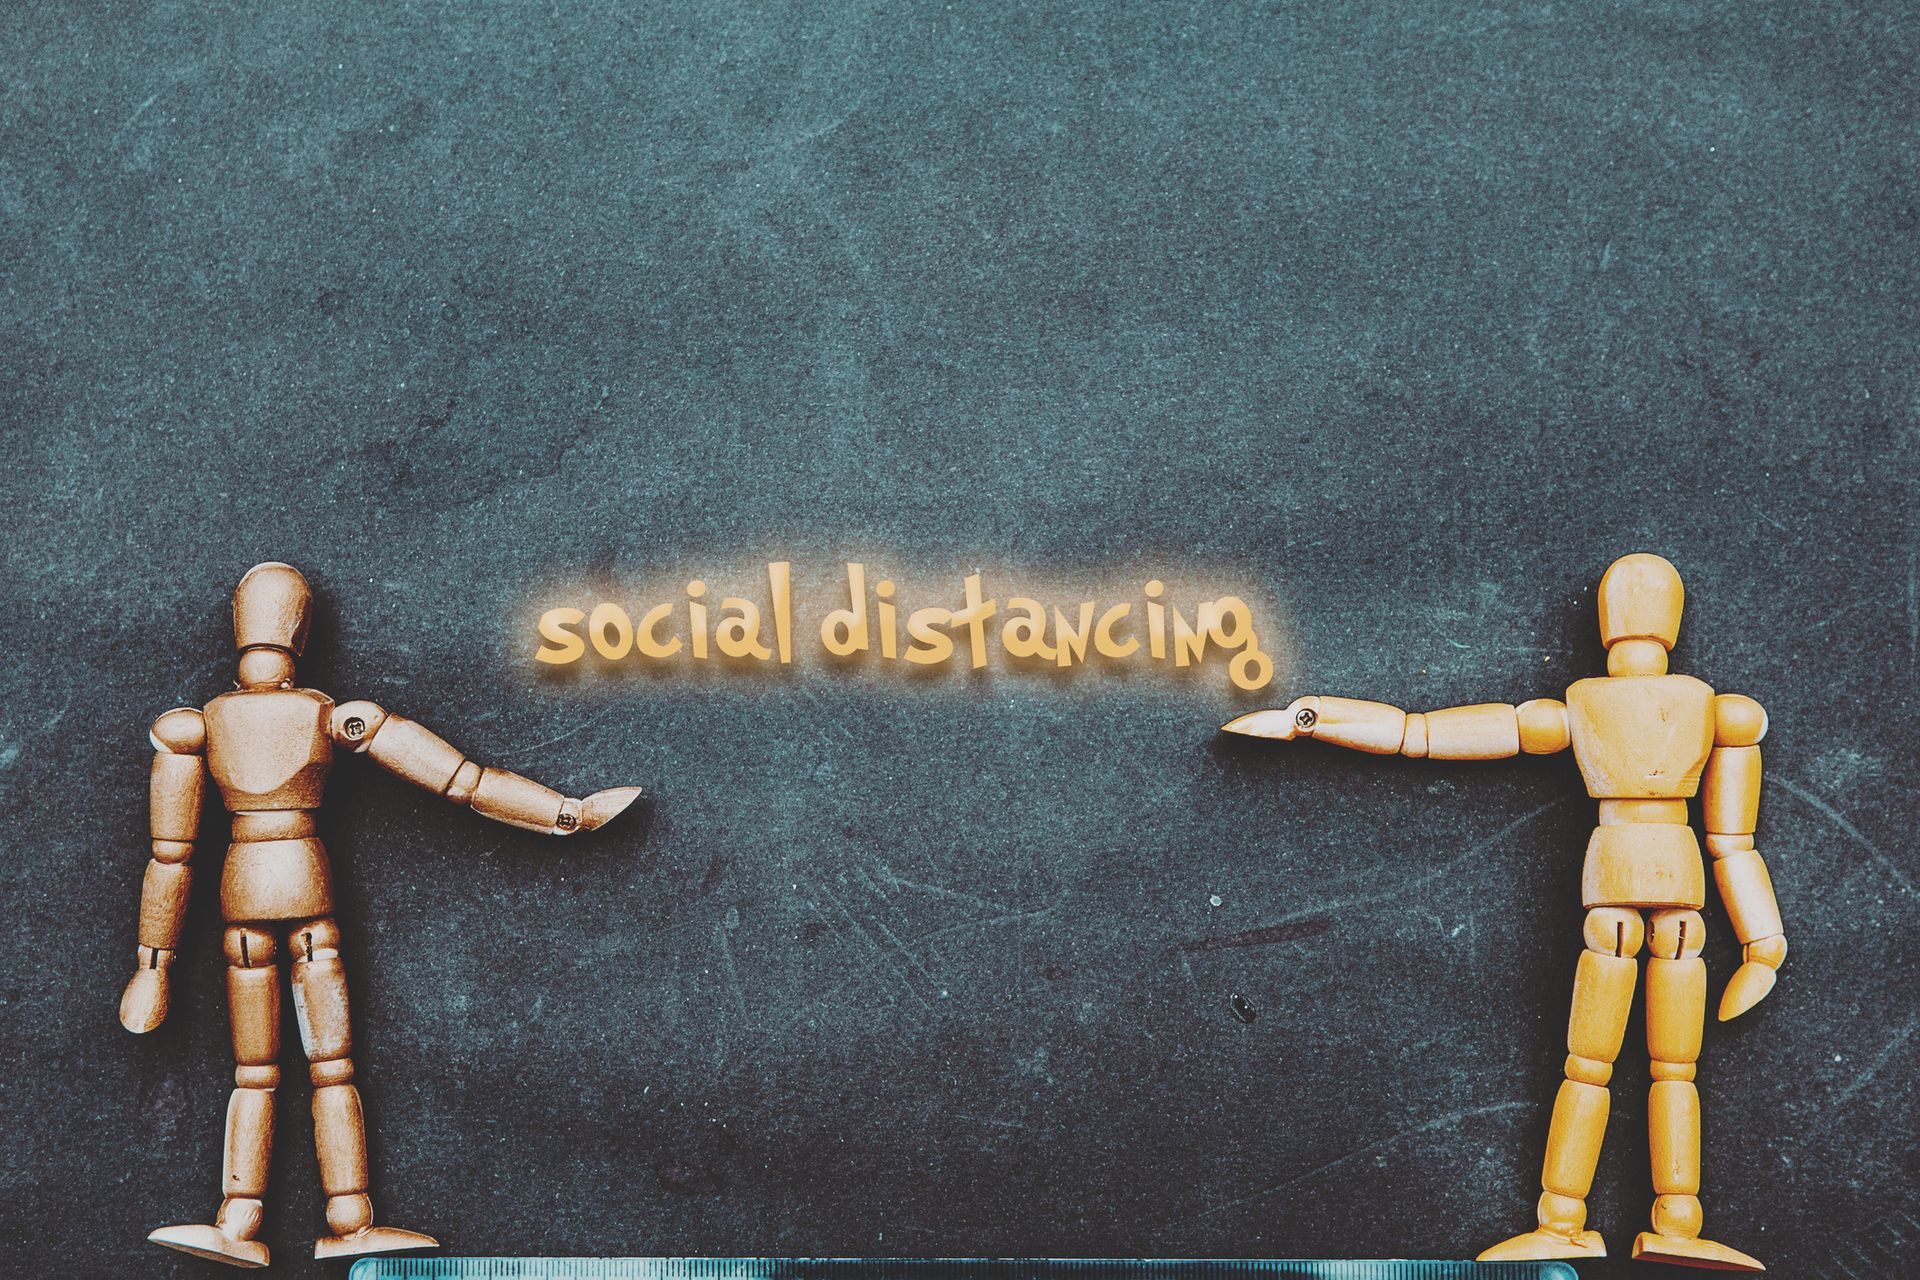 La distanciation sociale reste la bienvenue dans nos contacts sociaux 